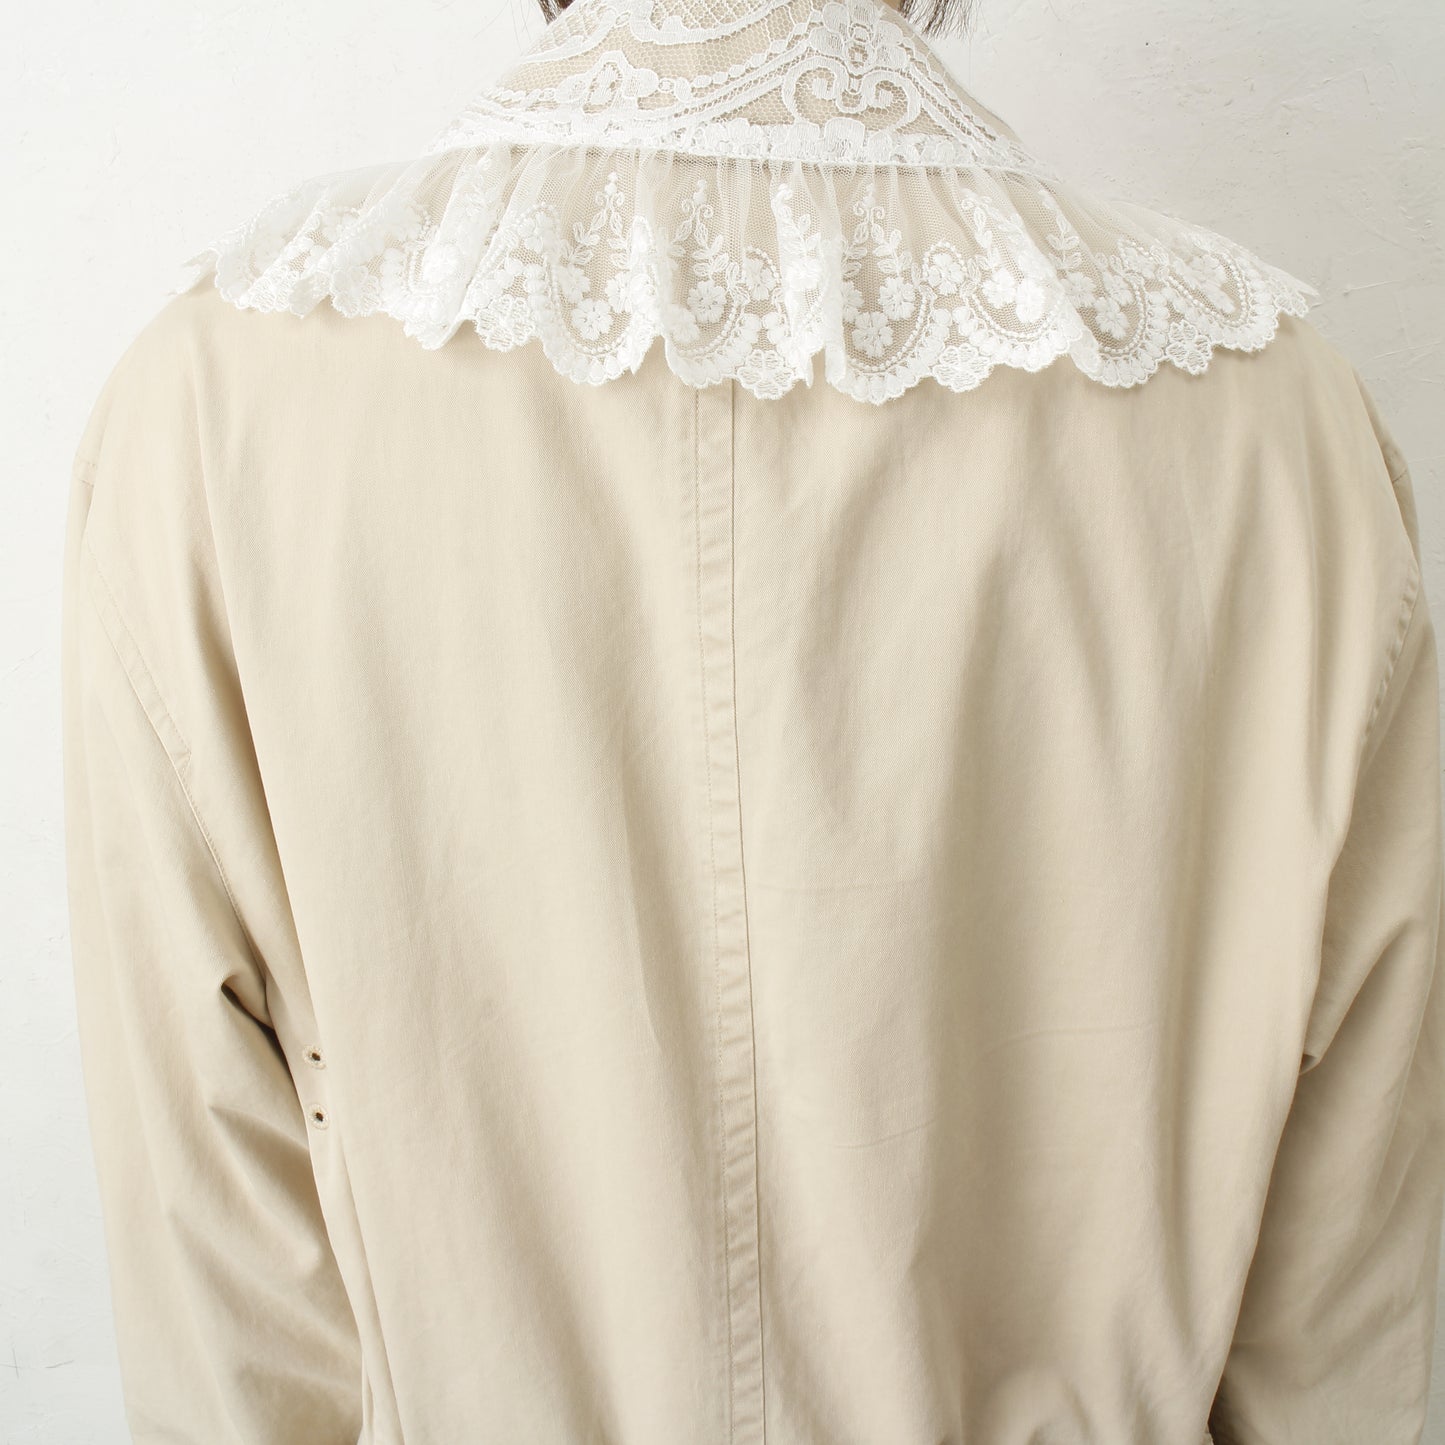 overlace /lace soutien collar coat